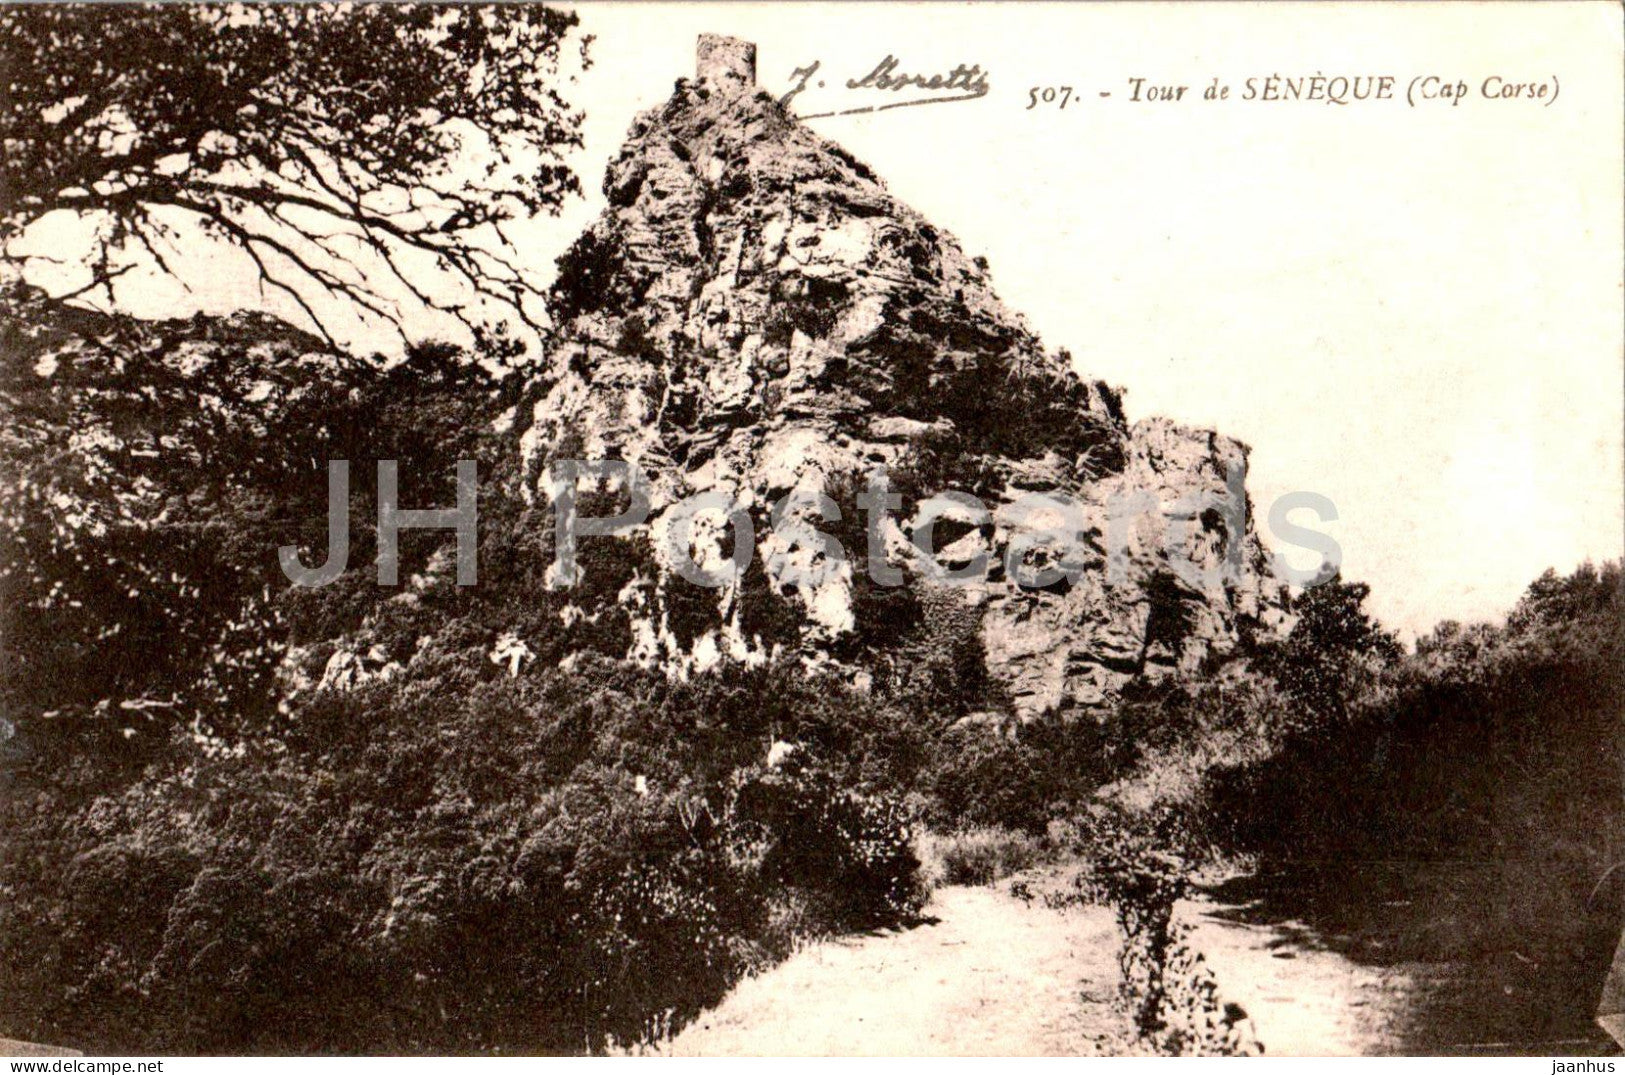 Tour de Seneque - Cap Corse - 507 - old postcard - France - used - JH Postcards